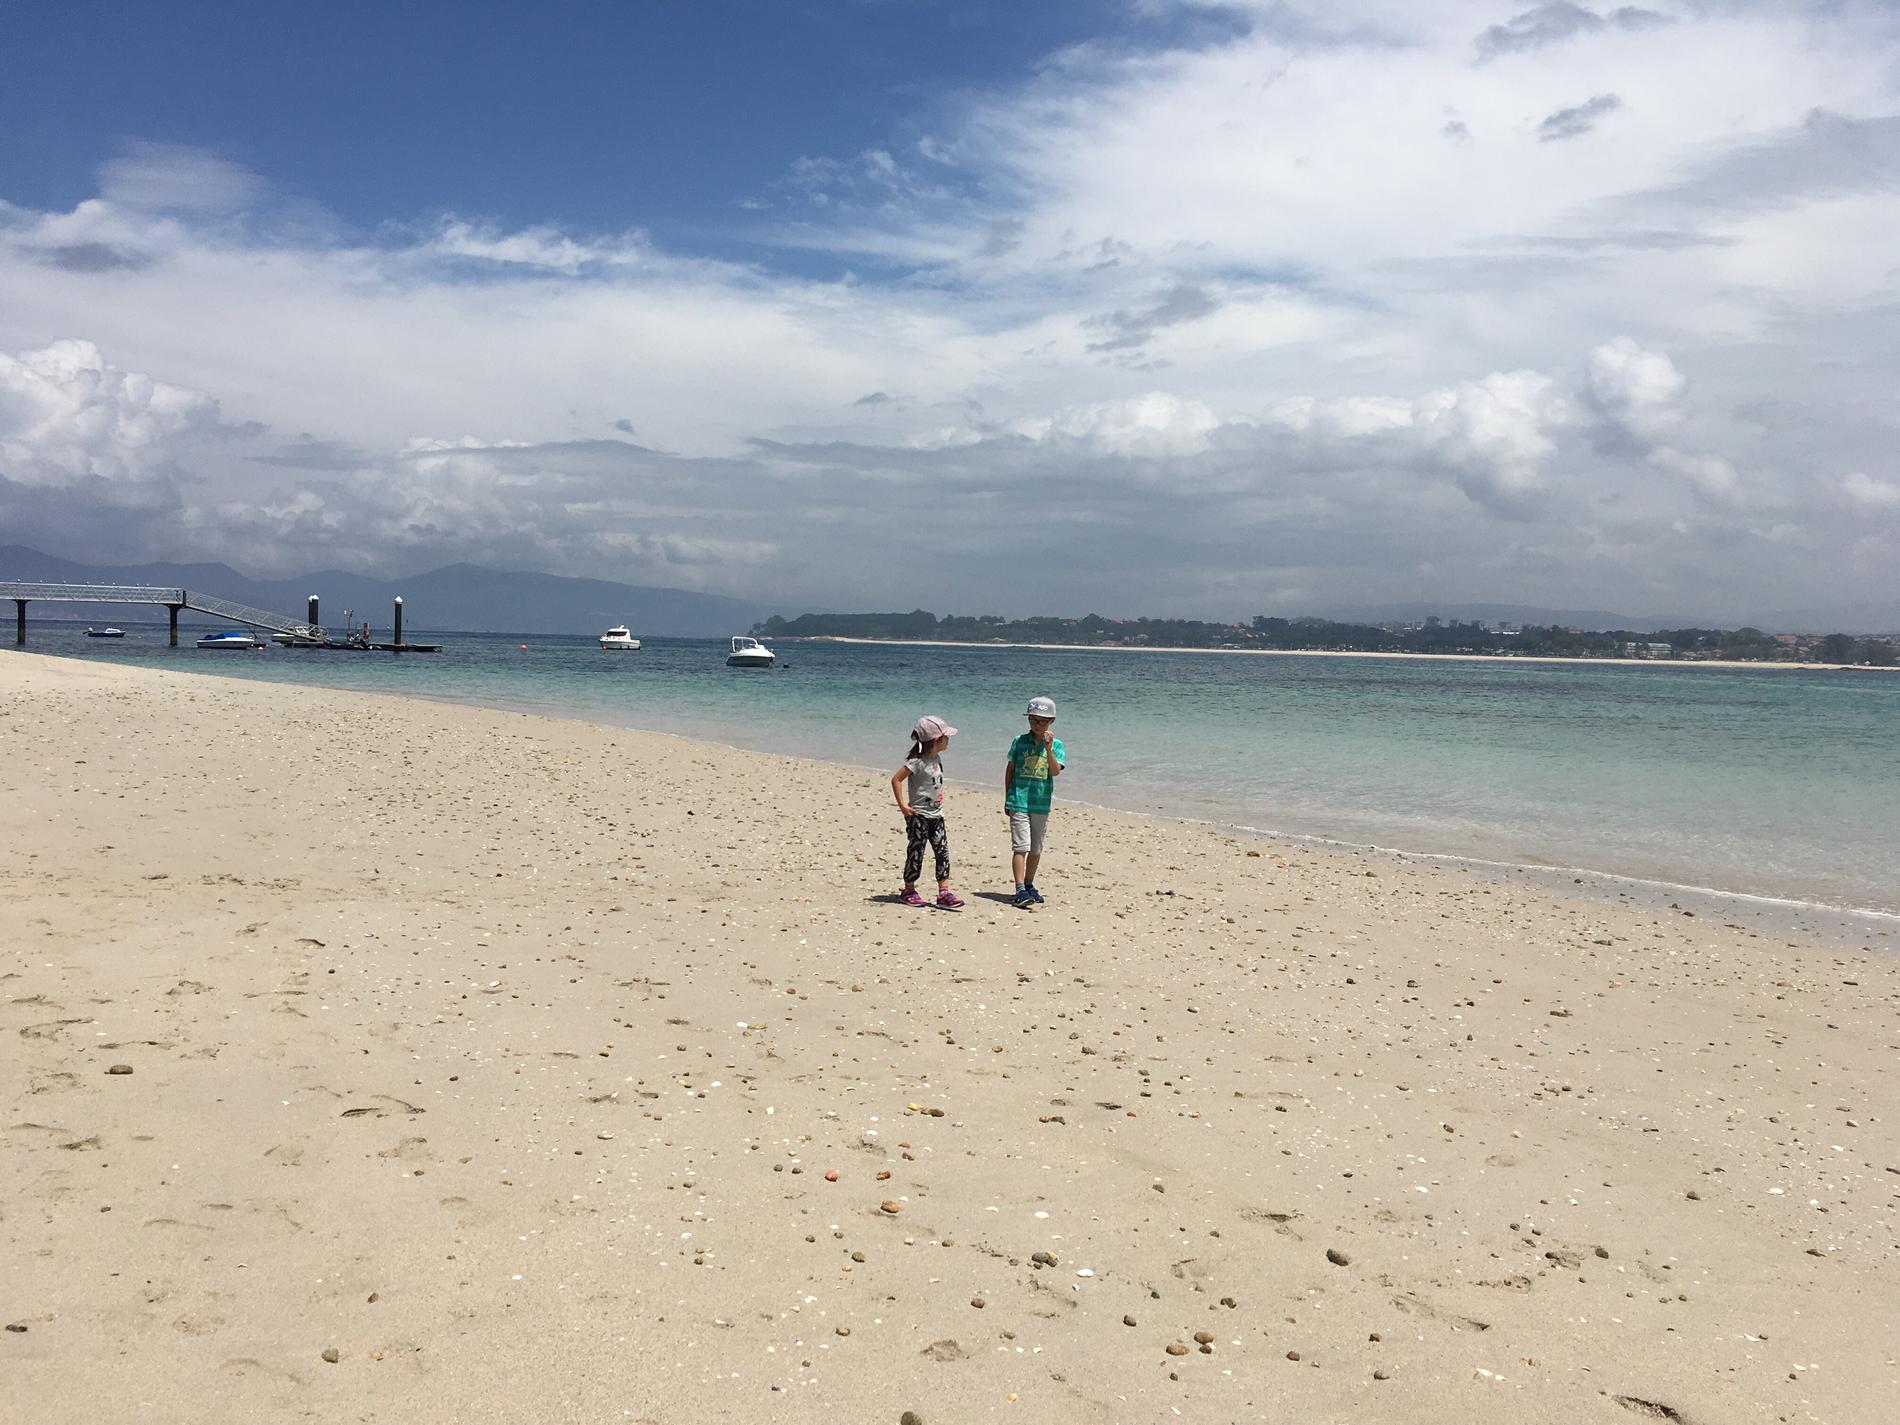 Barnen på stranden.